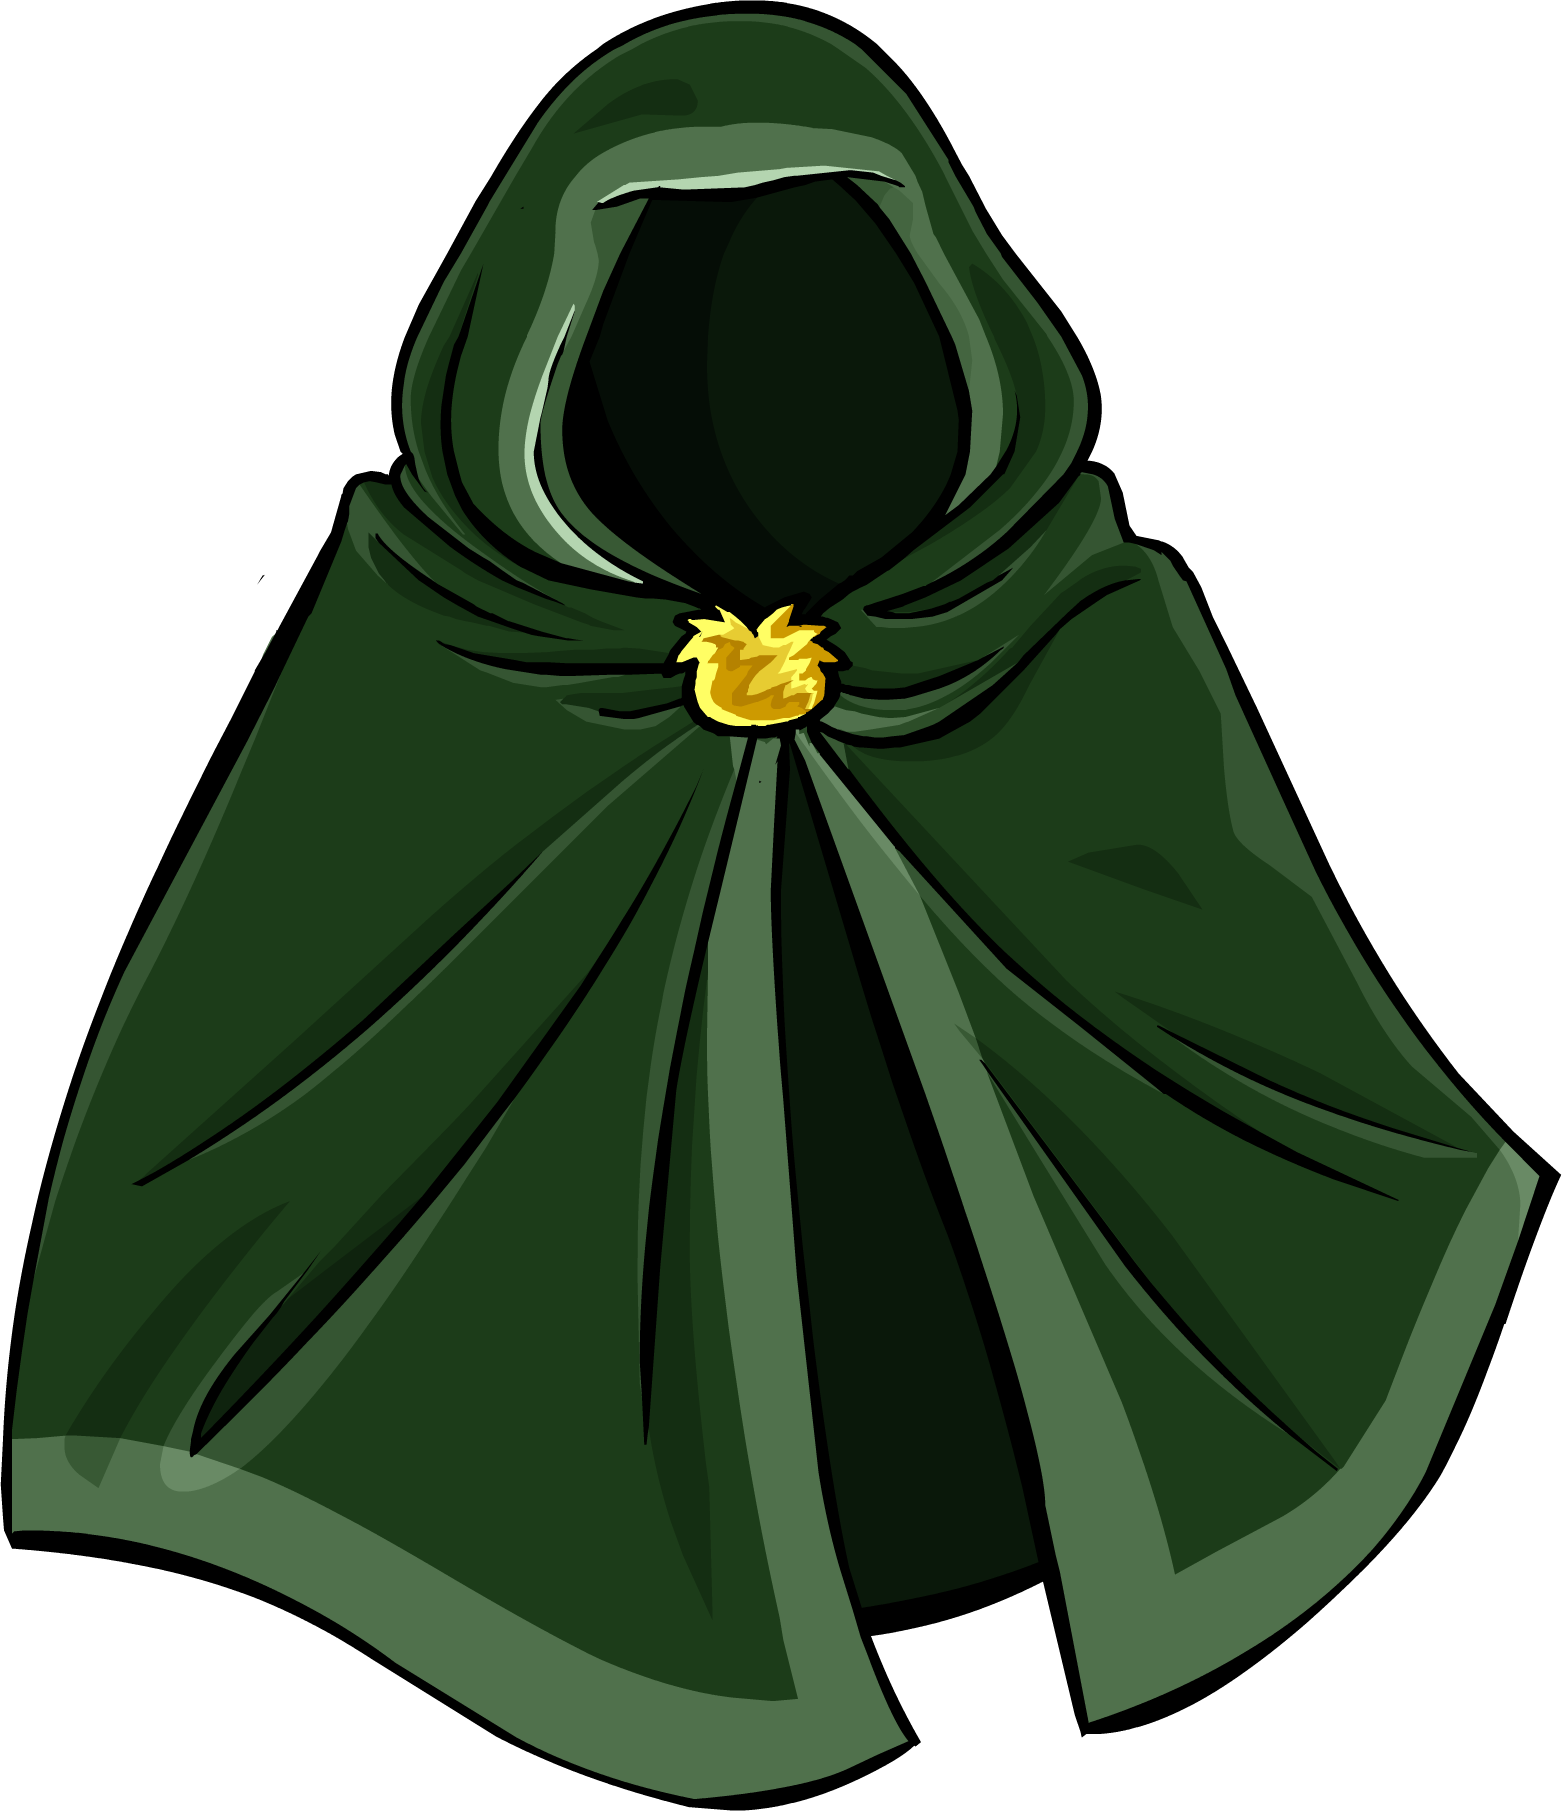 Green Hooded Cloak - Green Hooded Cloak (1562x1811)